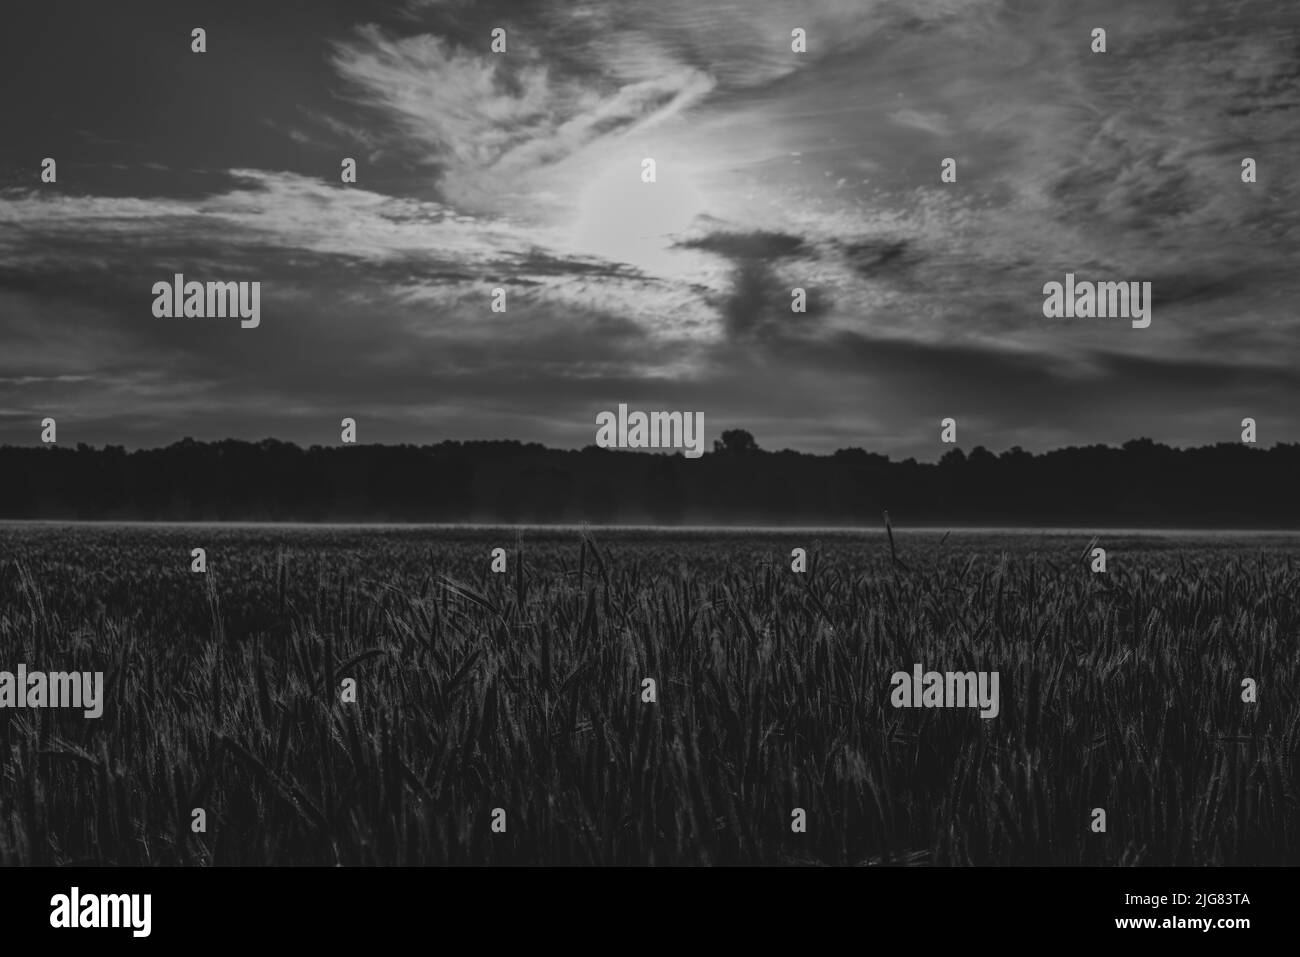 Kornfeld kurz nach Sonnenaufgang mit starkem Pollenflug, geringer Tiefenschärfe, Schwarz-Weiß-Retro-Look Stockfoto